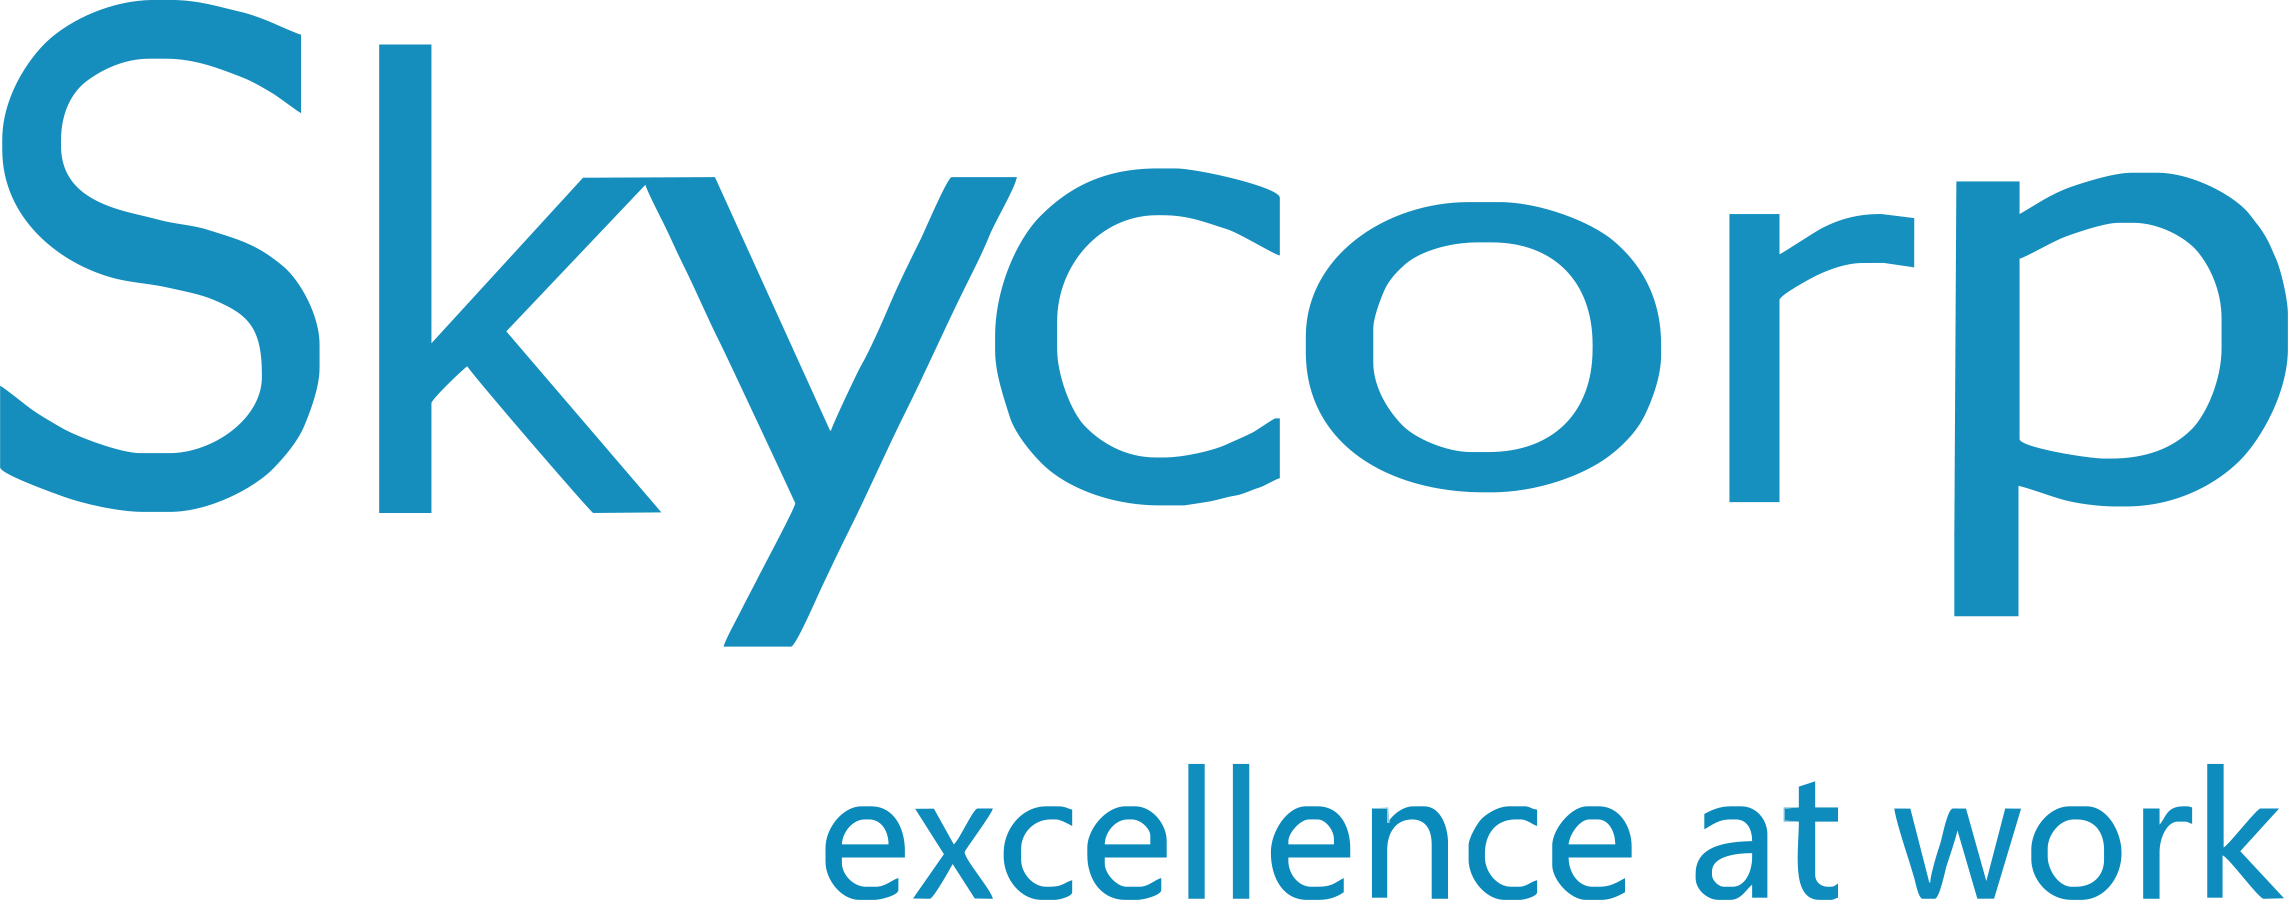 skycorp logotipi NB